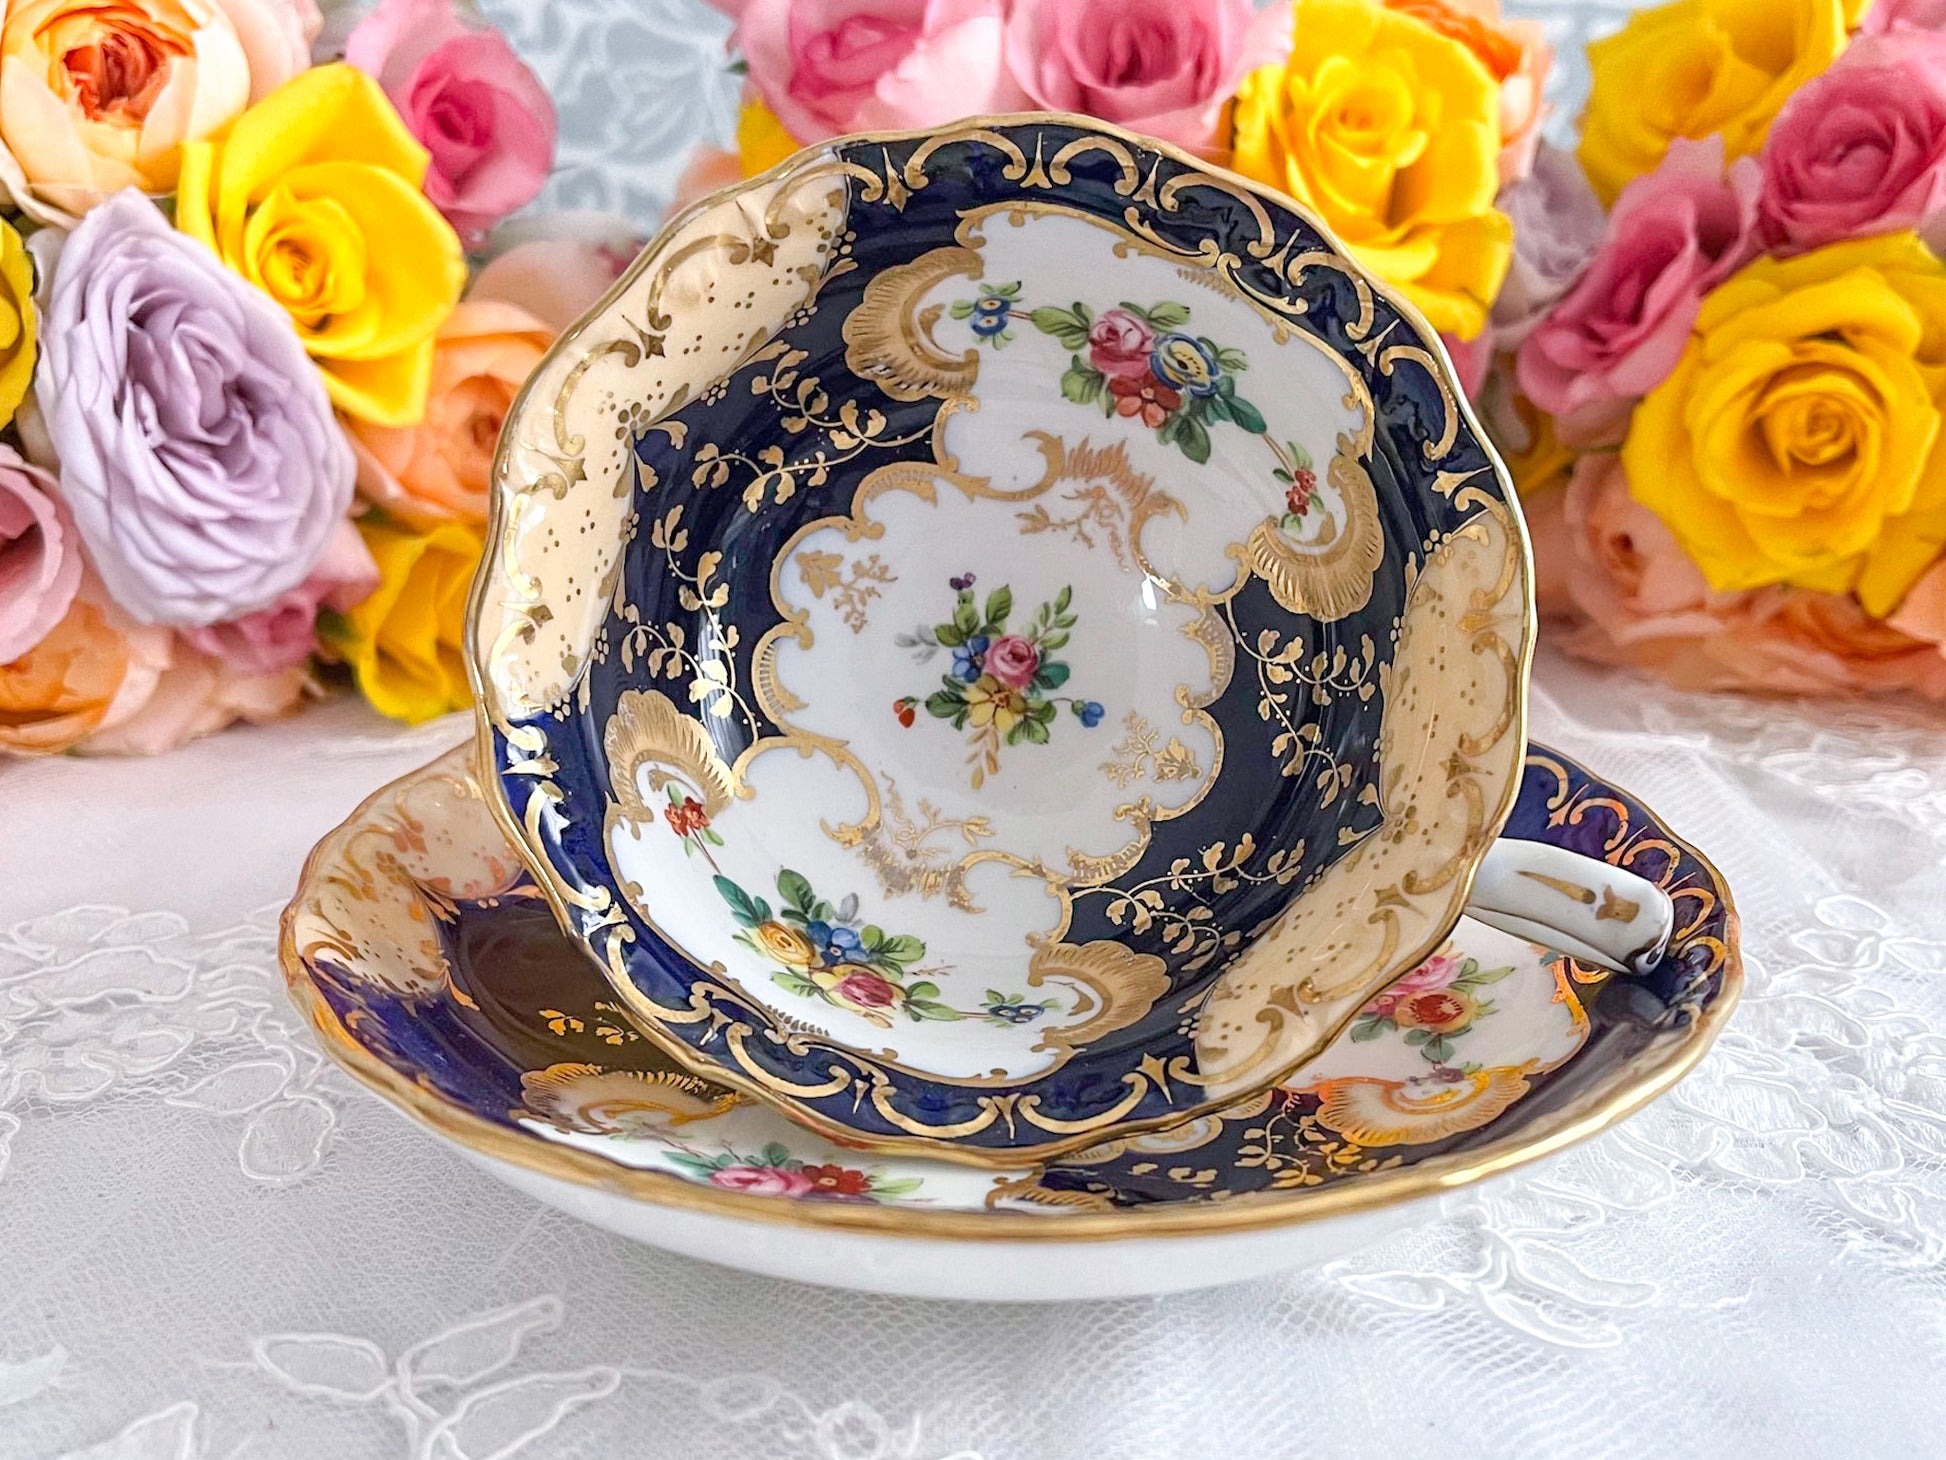 ミントンQシェイプハンドル、コバルトブルーのカップ&ソーサー。ハンドペイントで描かれた金彩と花々が美しいです、Rose Antiquesはコールポートをはじめ英国アンティーク磁器をご紹介しています。